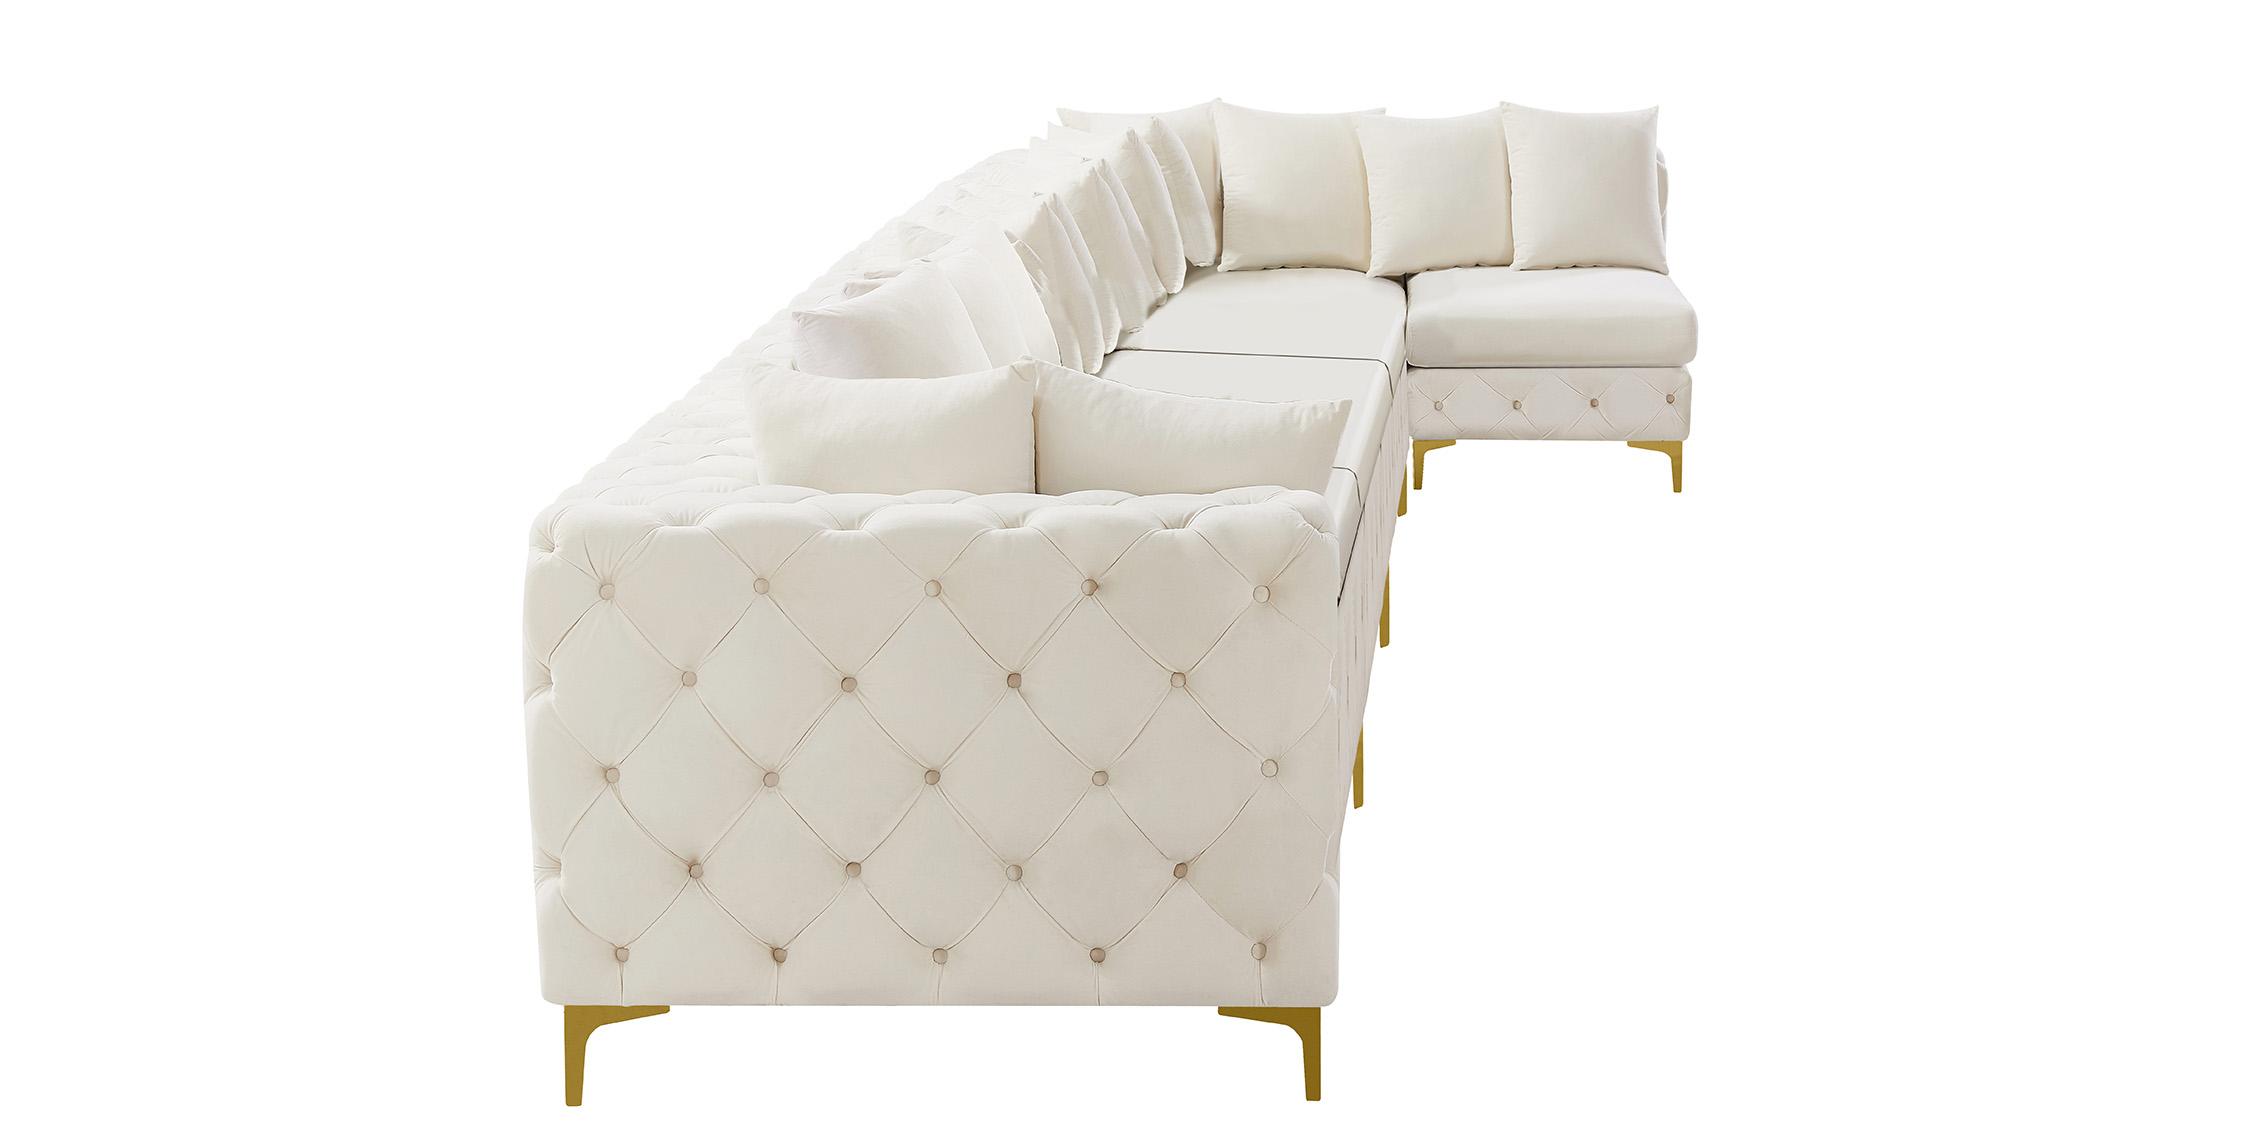 

    
Meridian Furniture TREMBLAY 686Cream-Sec7B Modular Sectional Sofa Cream 686Cream-Sec7B
